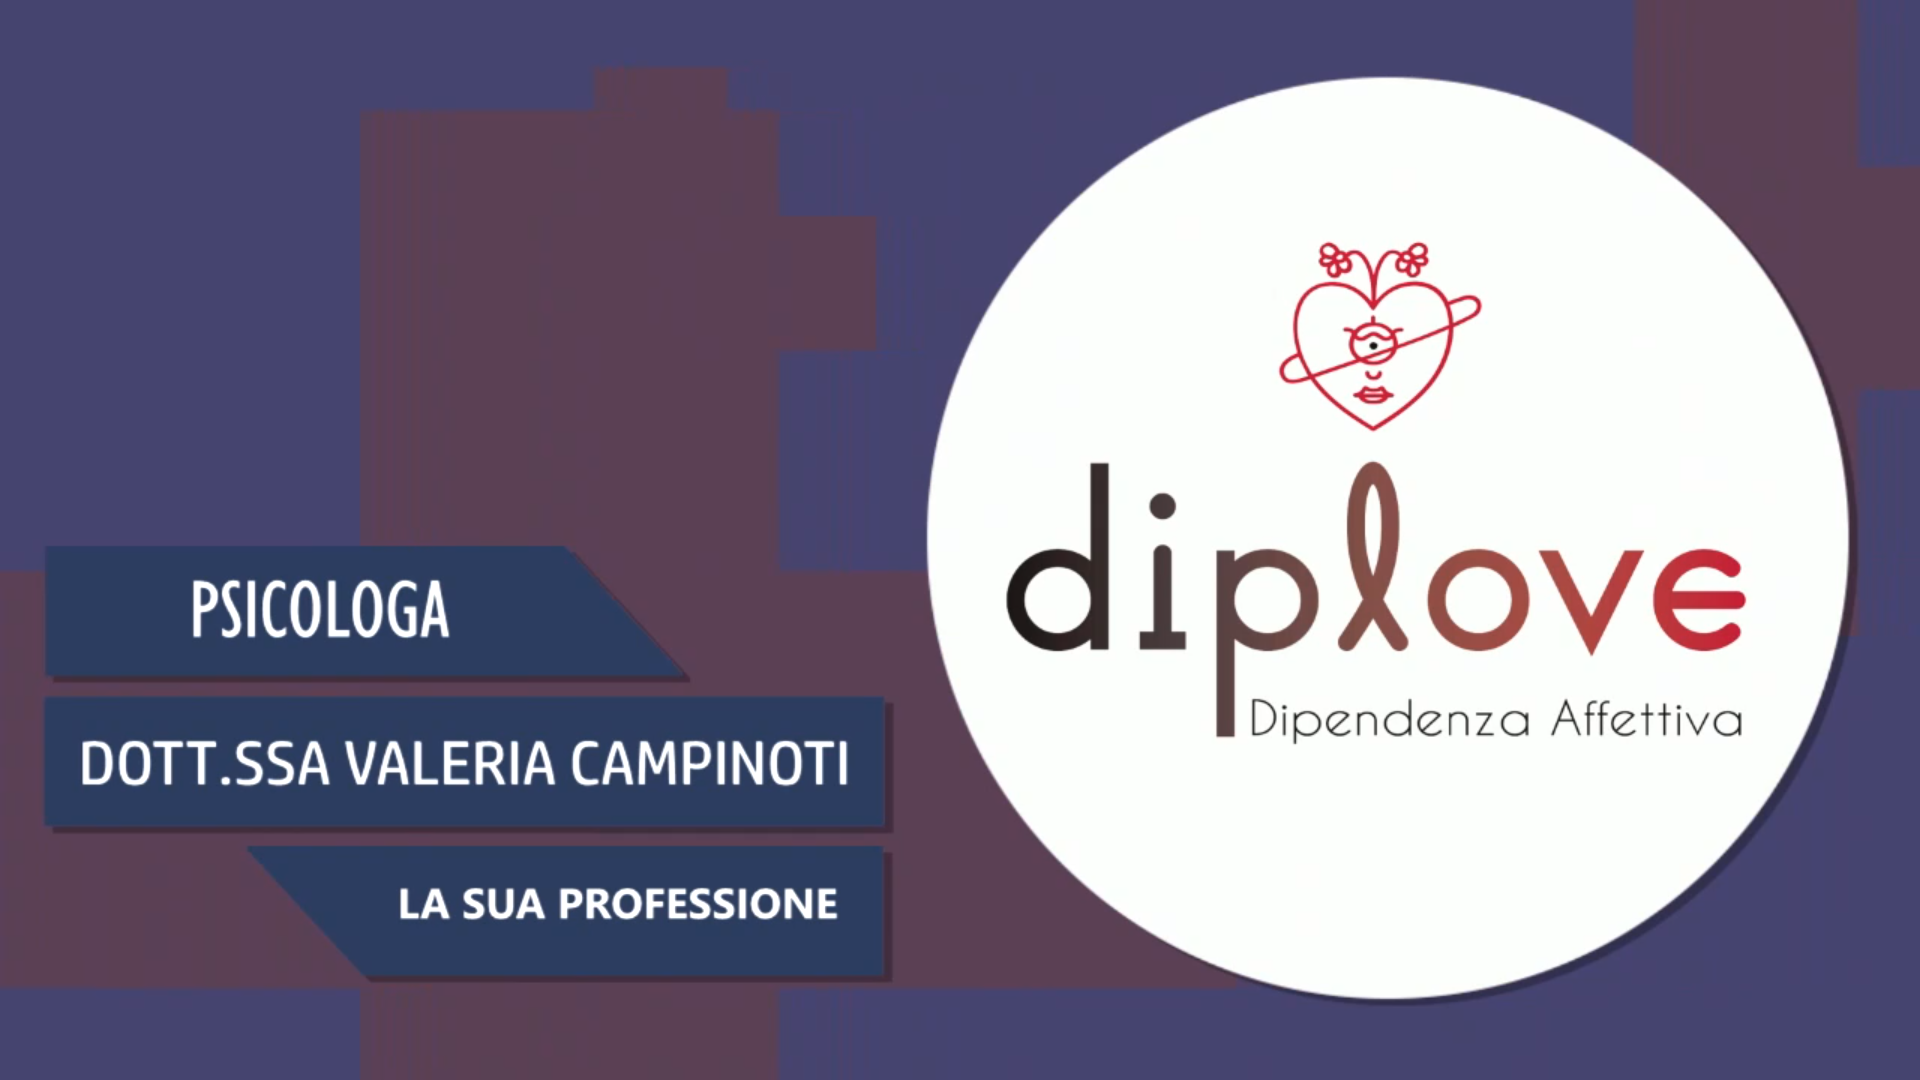 Intervista alla Dott.ssa Valeria Campinoti – La sua professione